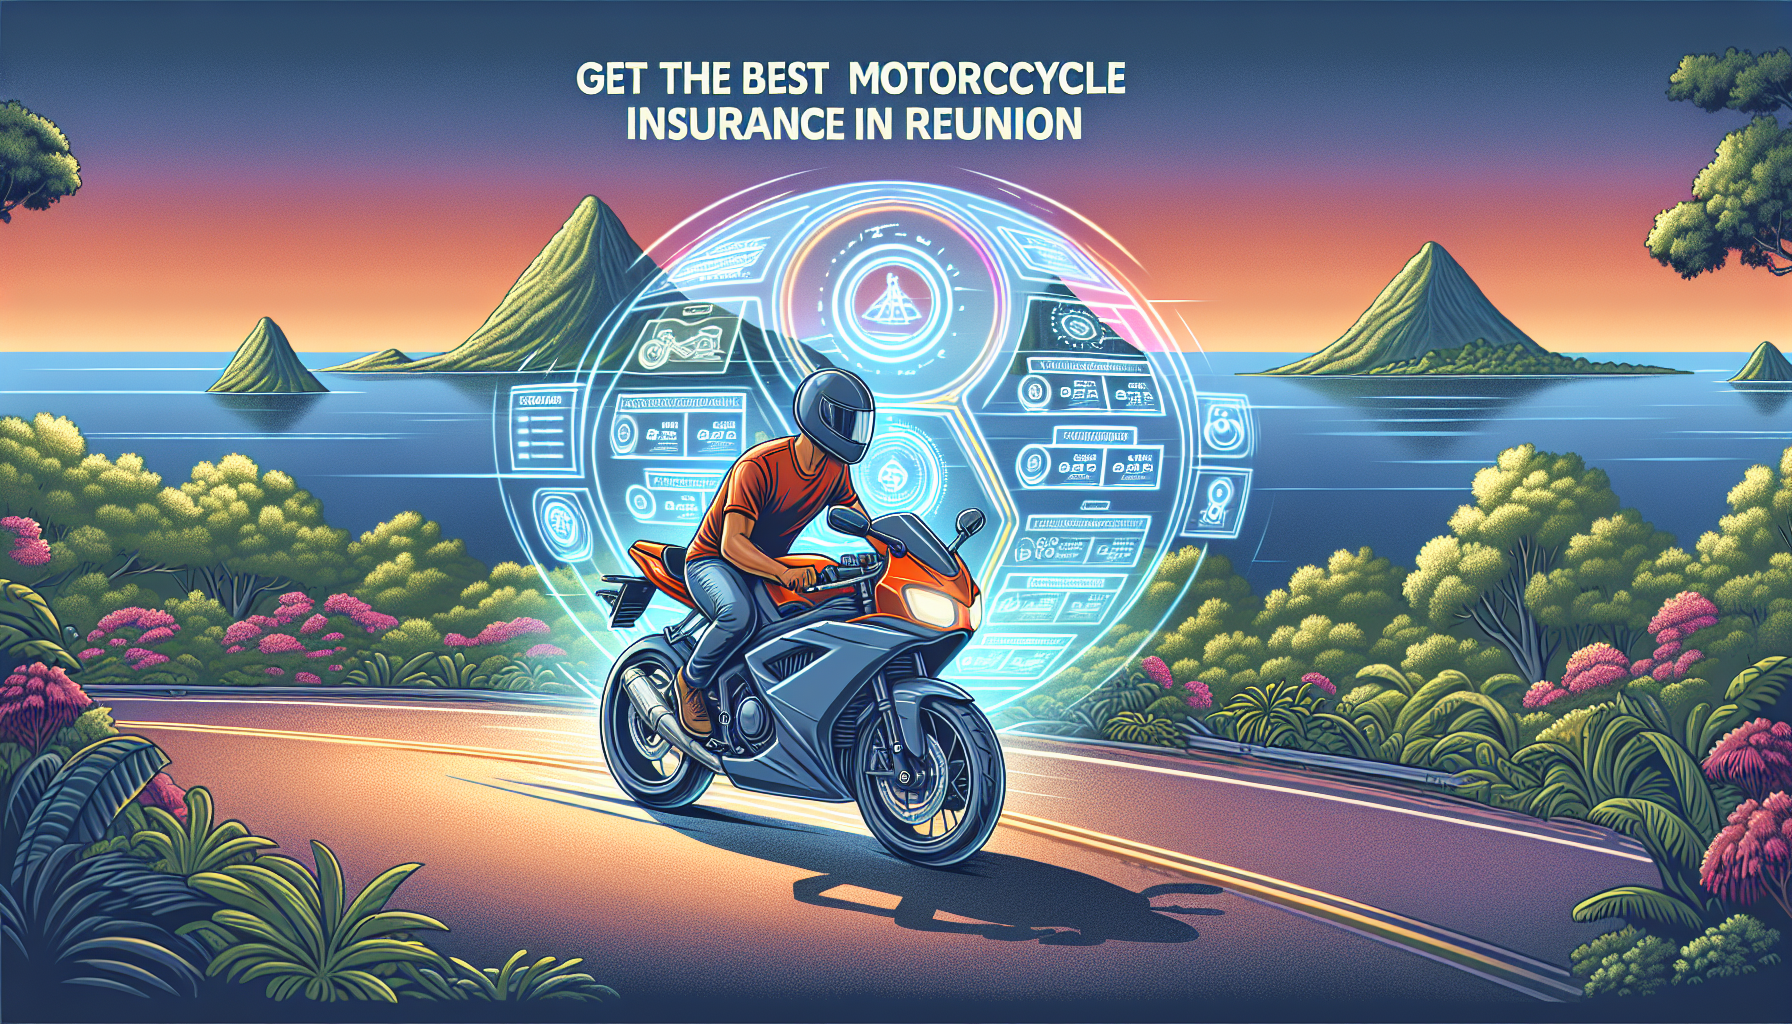 assurance moto 974 : découvrez nos conseils pour comparer les devis des assurances moto à la réunion et trouver la meilleure offre pour votre véhicule.